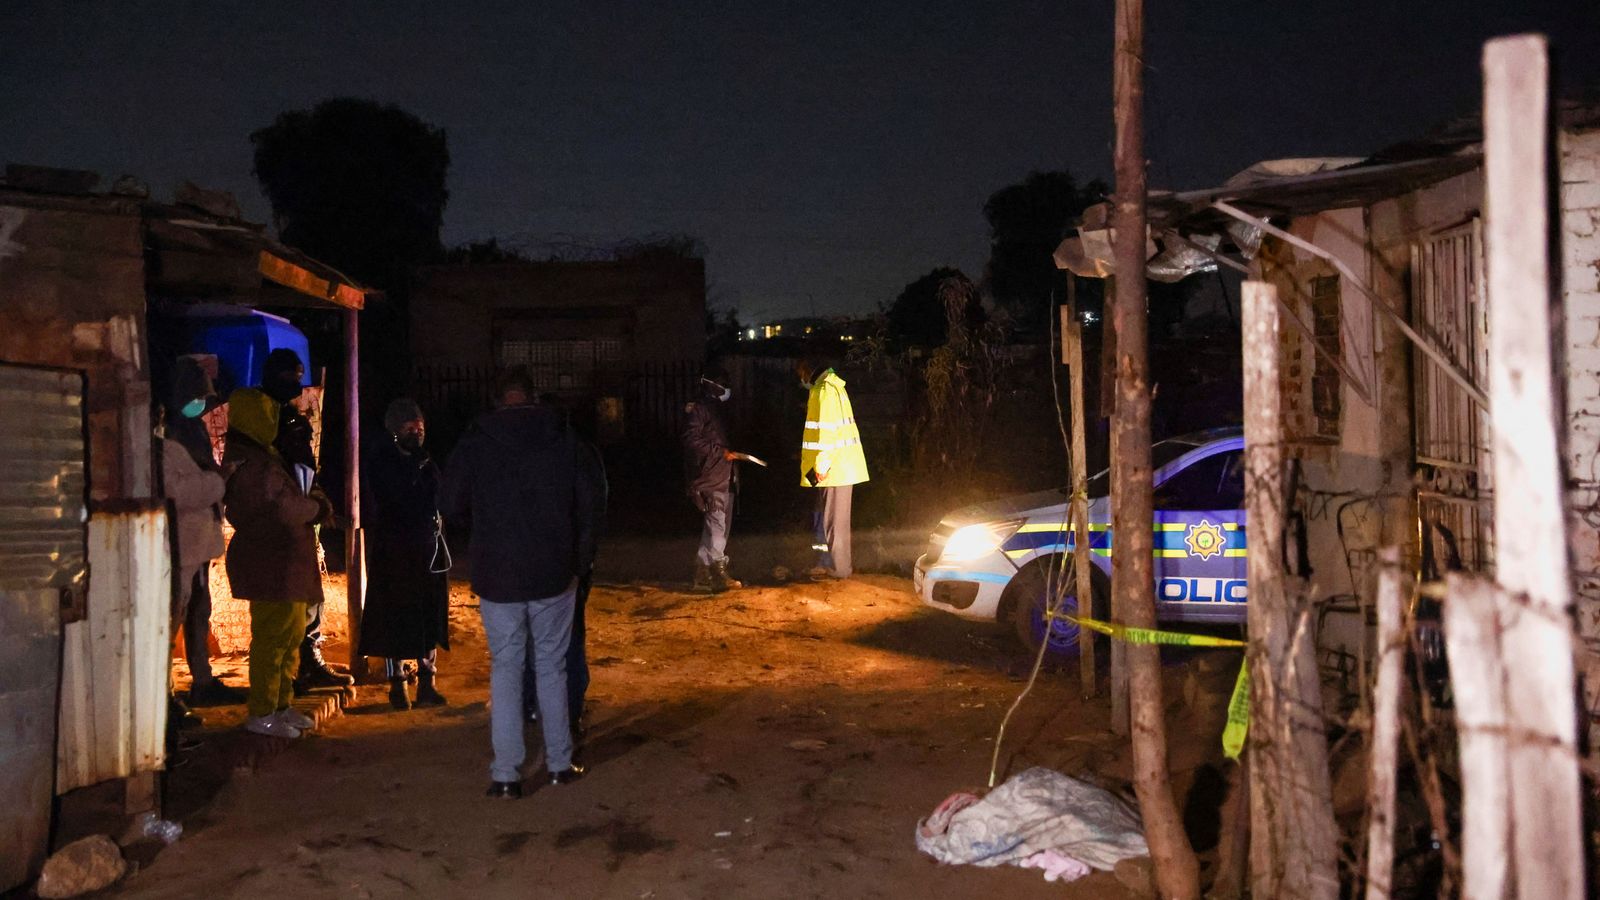 South Africa: At least 16 people die in suspected gas leak